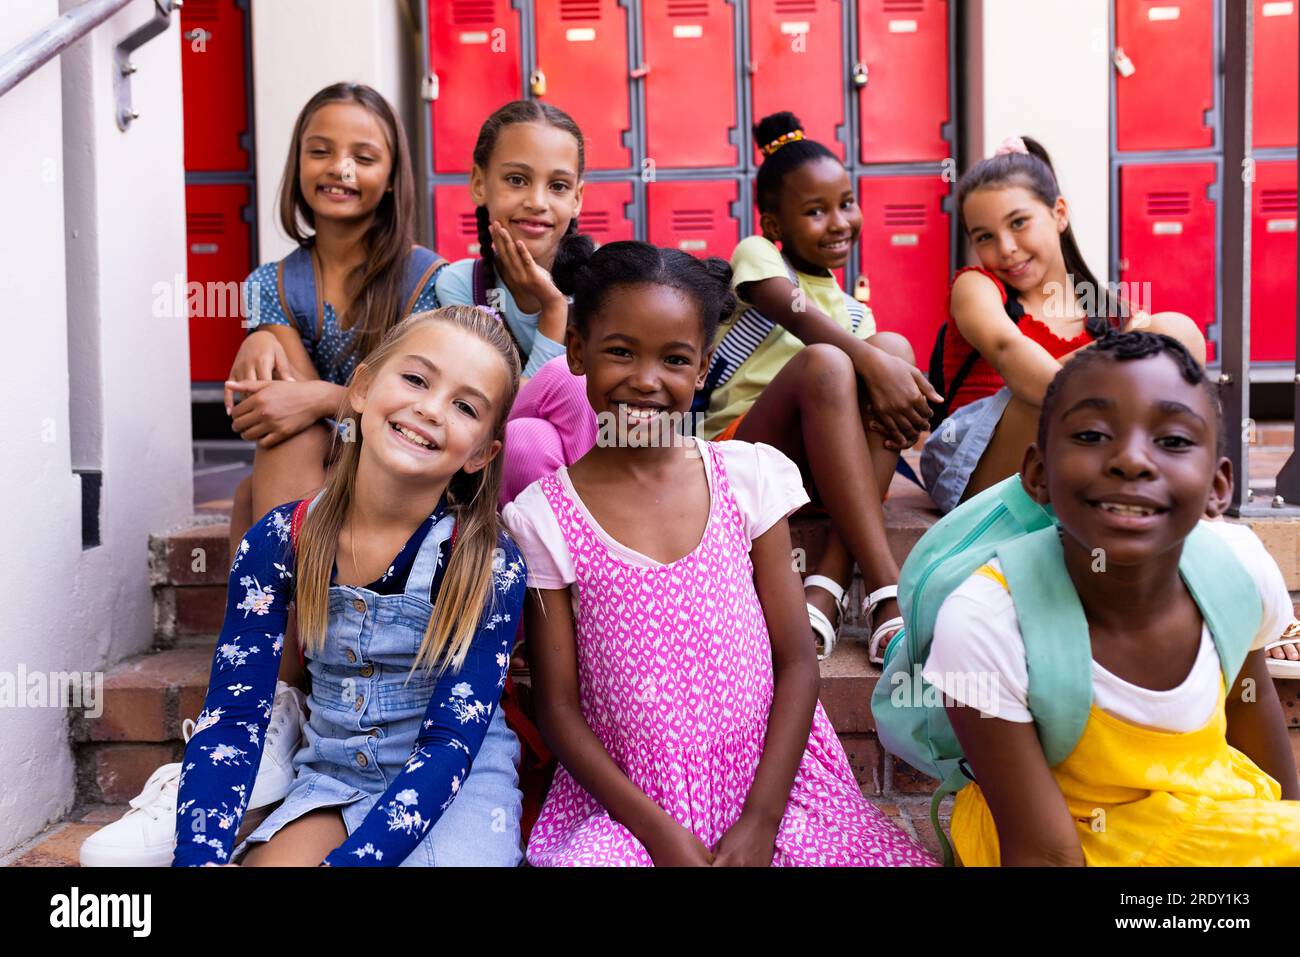 Portrait of diverse happy schoolgirls in elementary school cloakroom Stock Photo